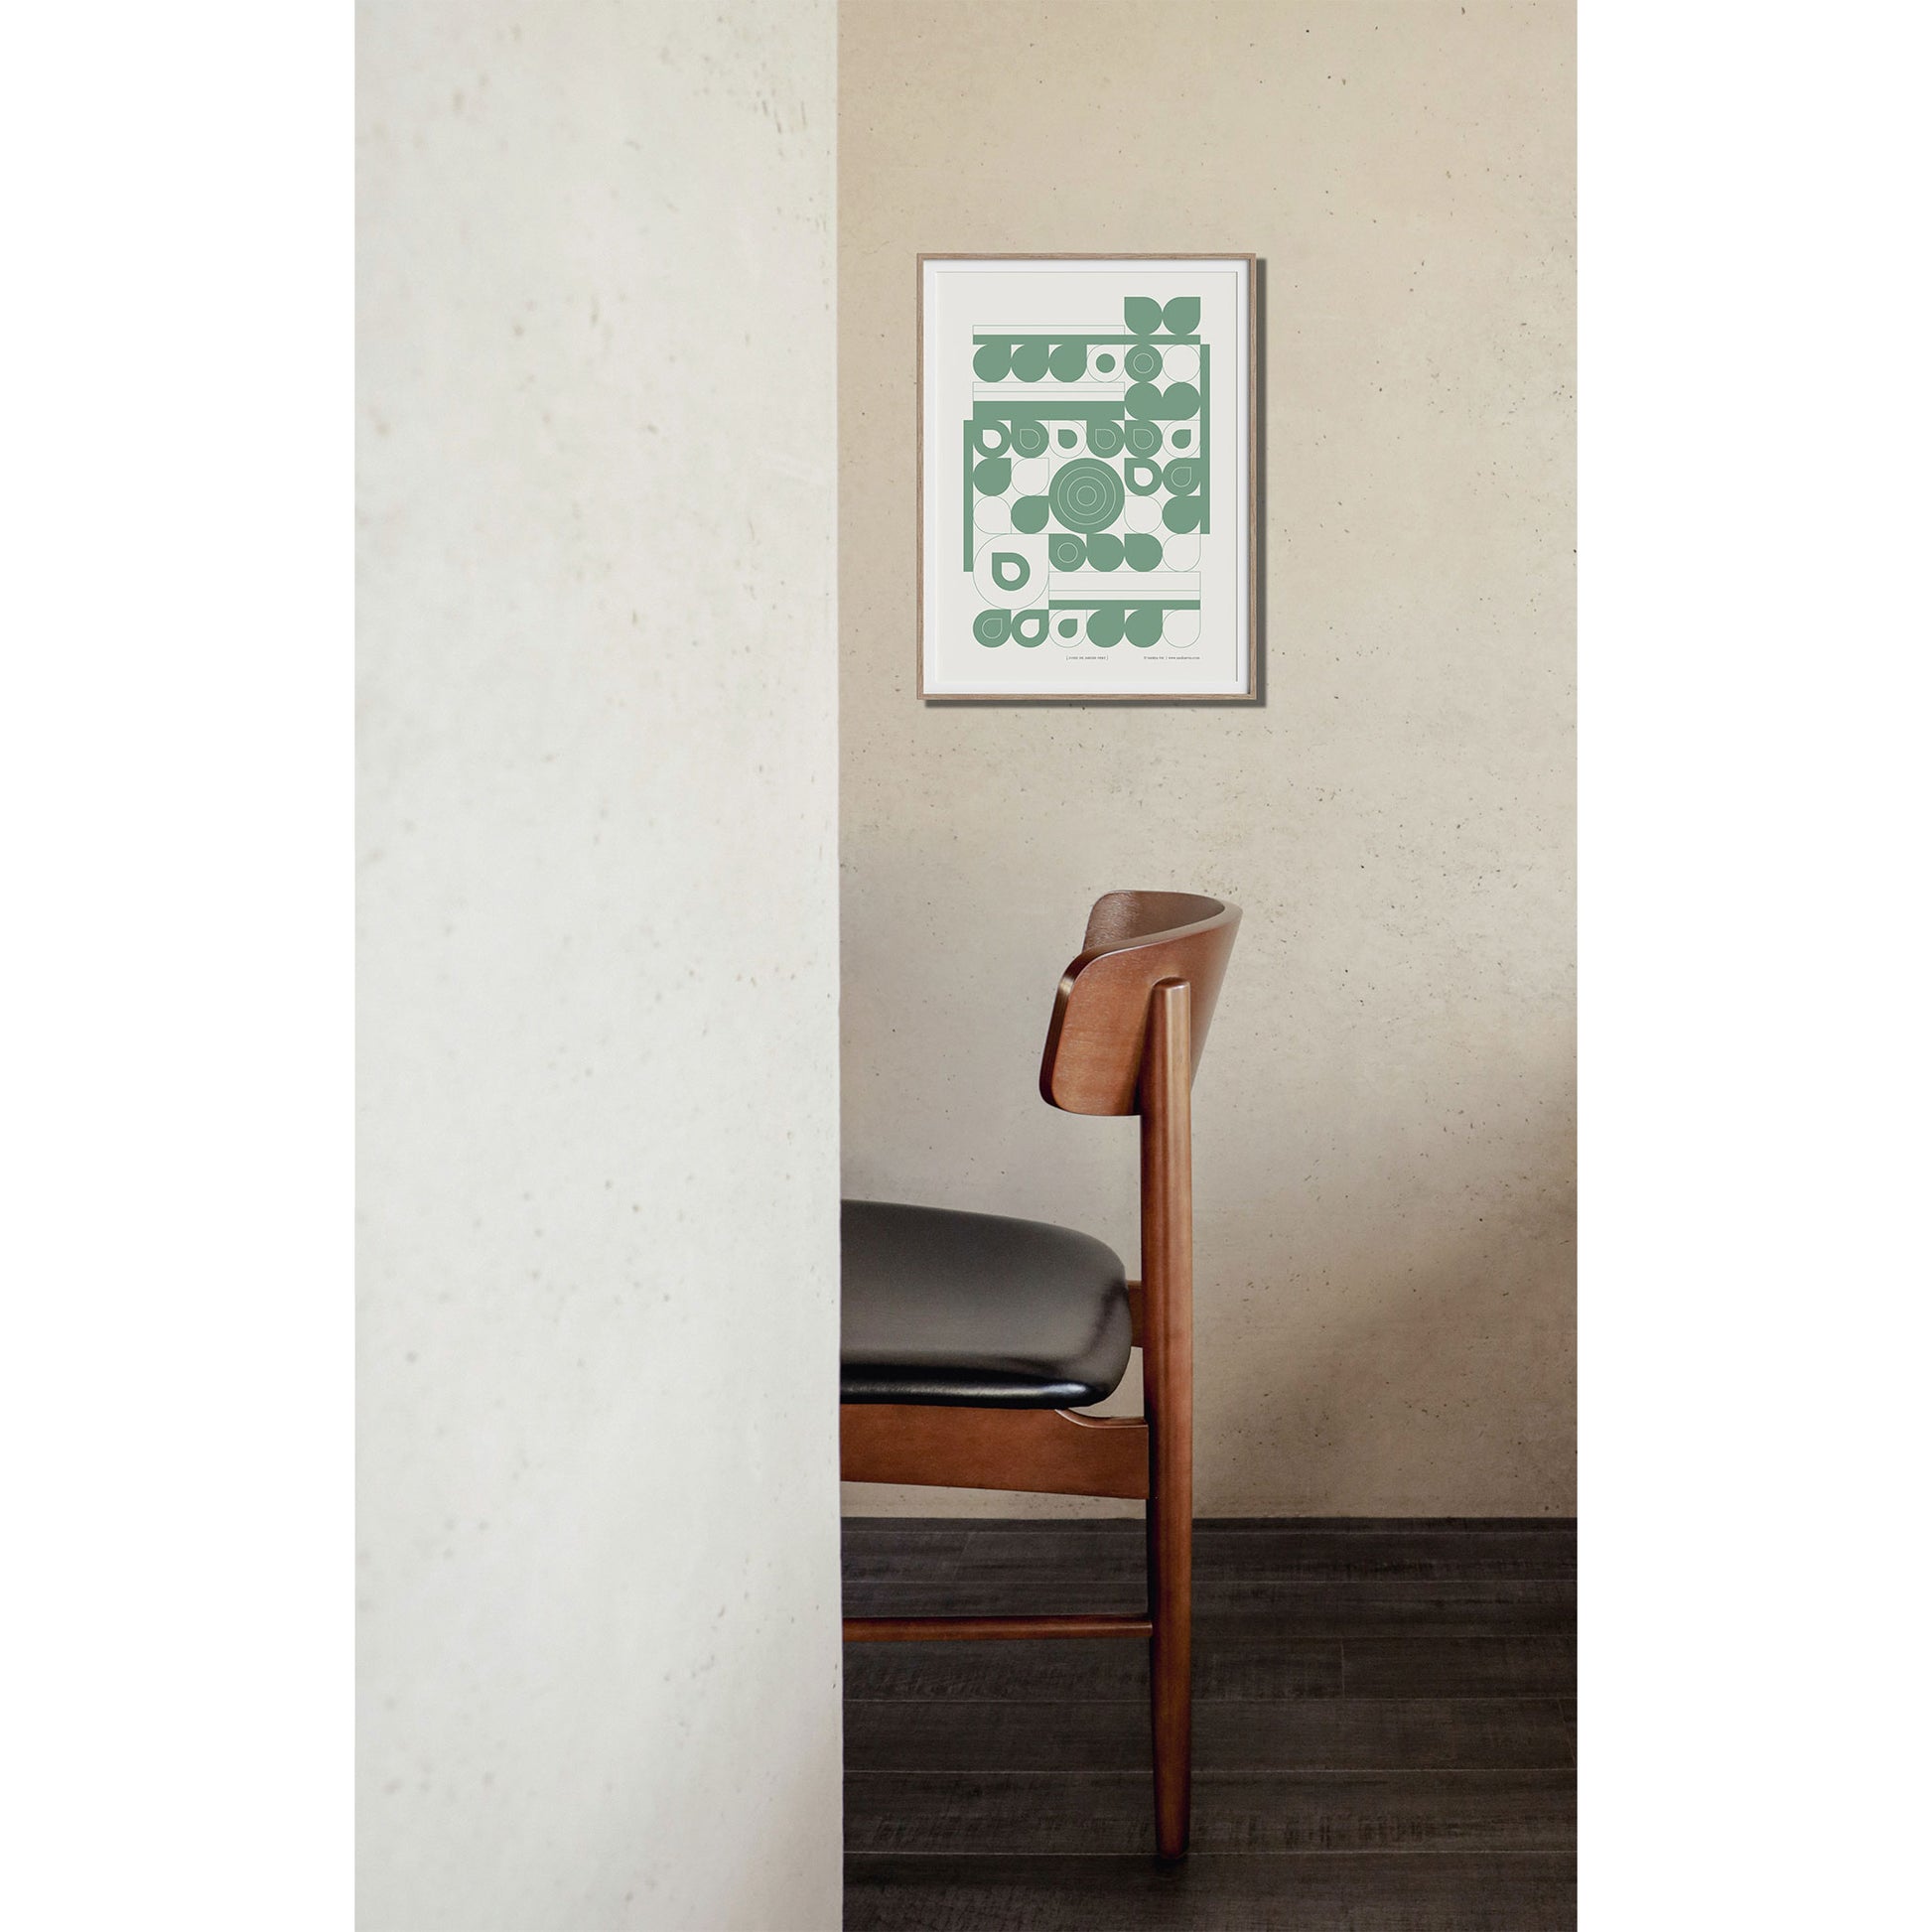 Productafbeelding poster "fond de jardin vert" 2de impressie foto, ingelijst, hangend aan een wand met een stijlvolle stoel erbij.